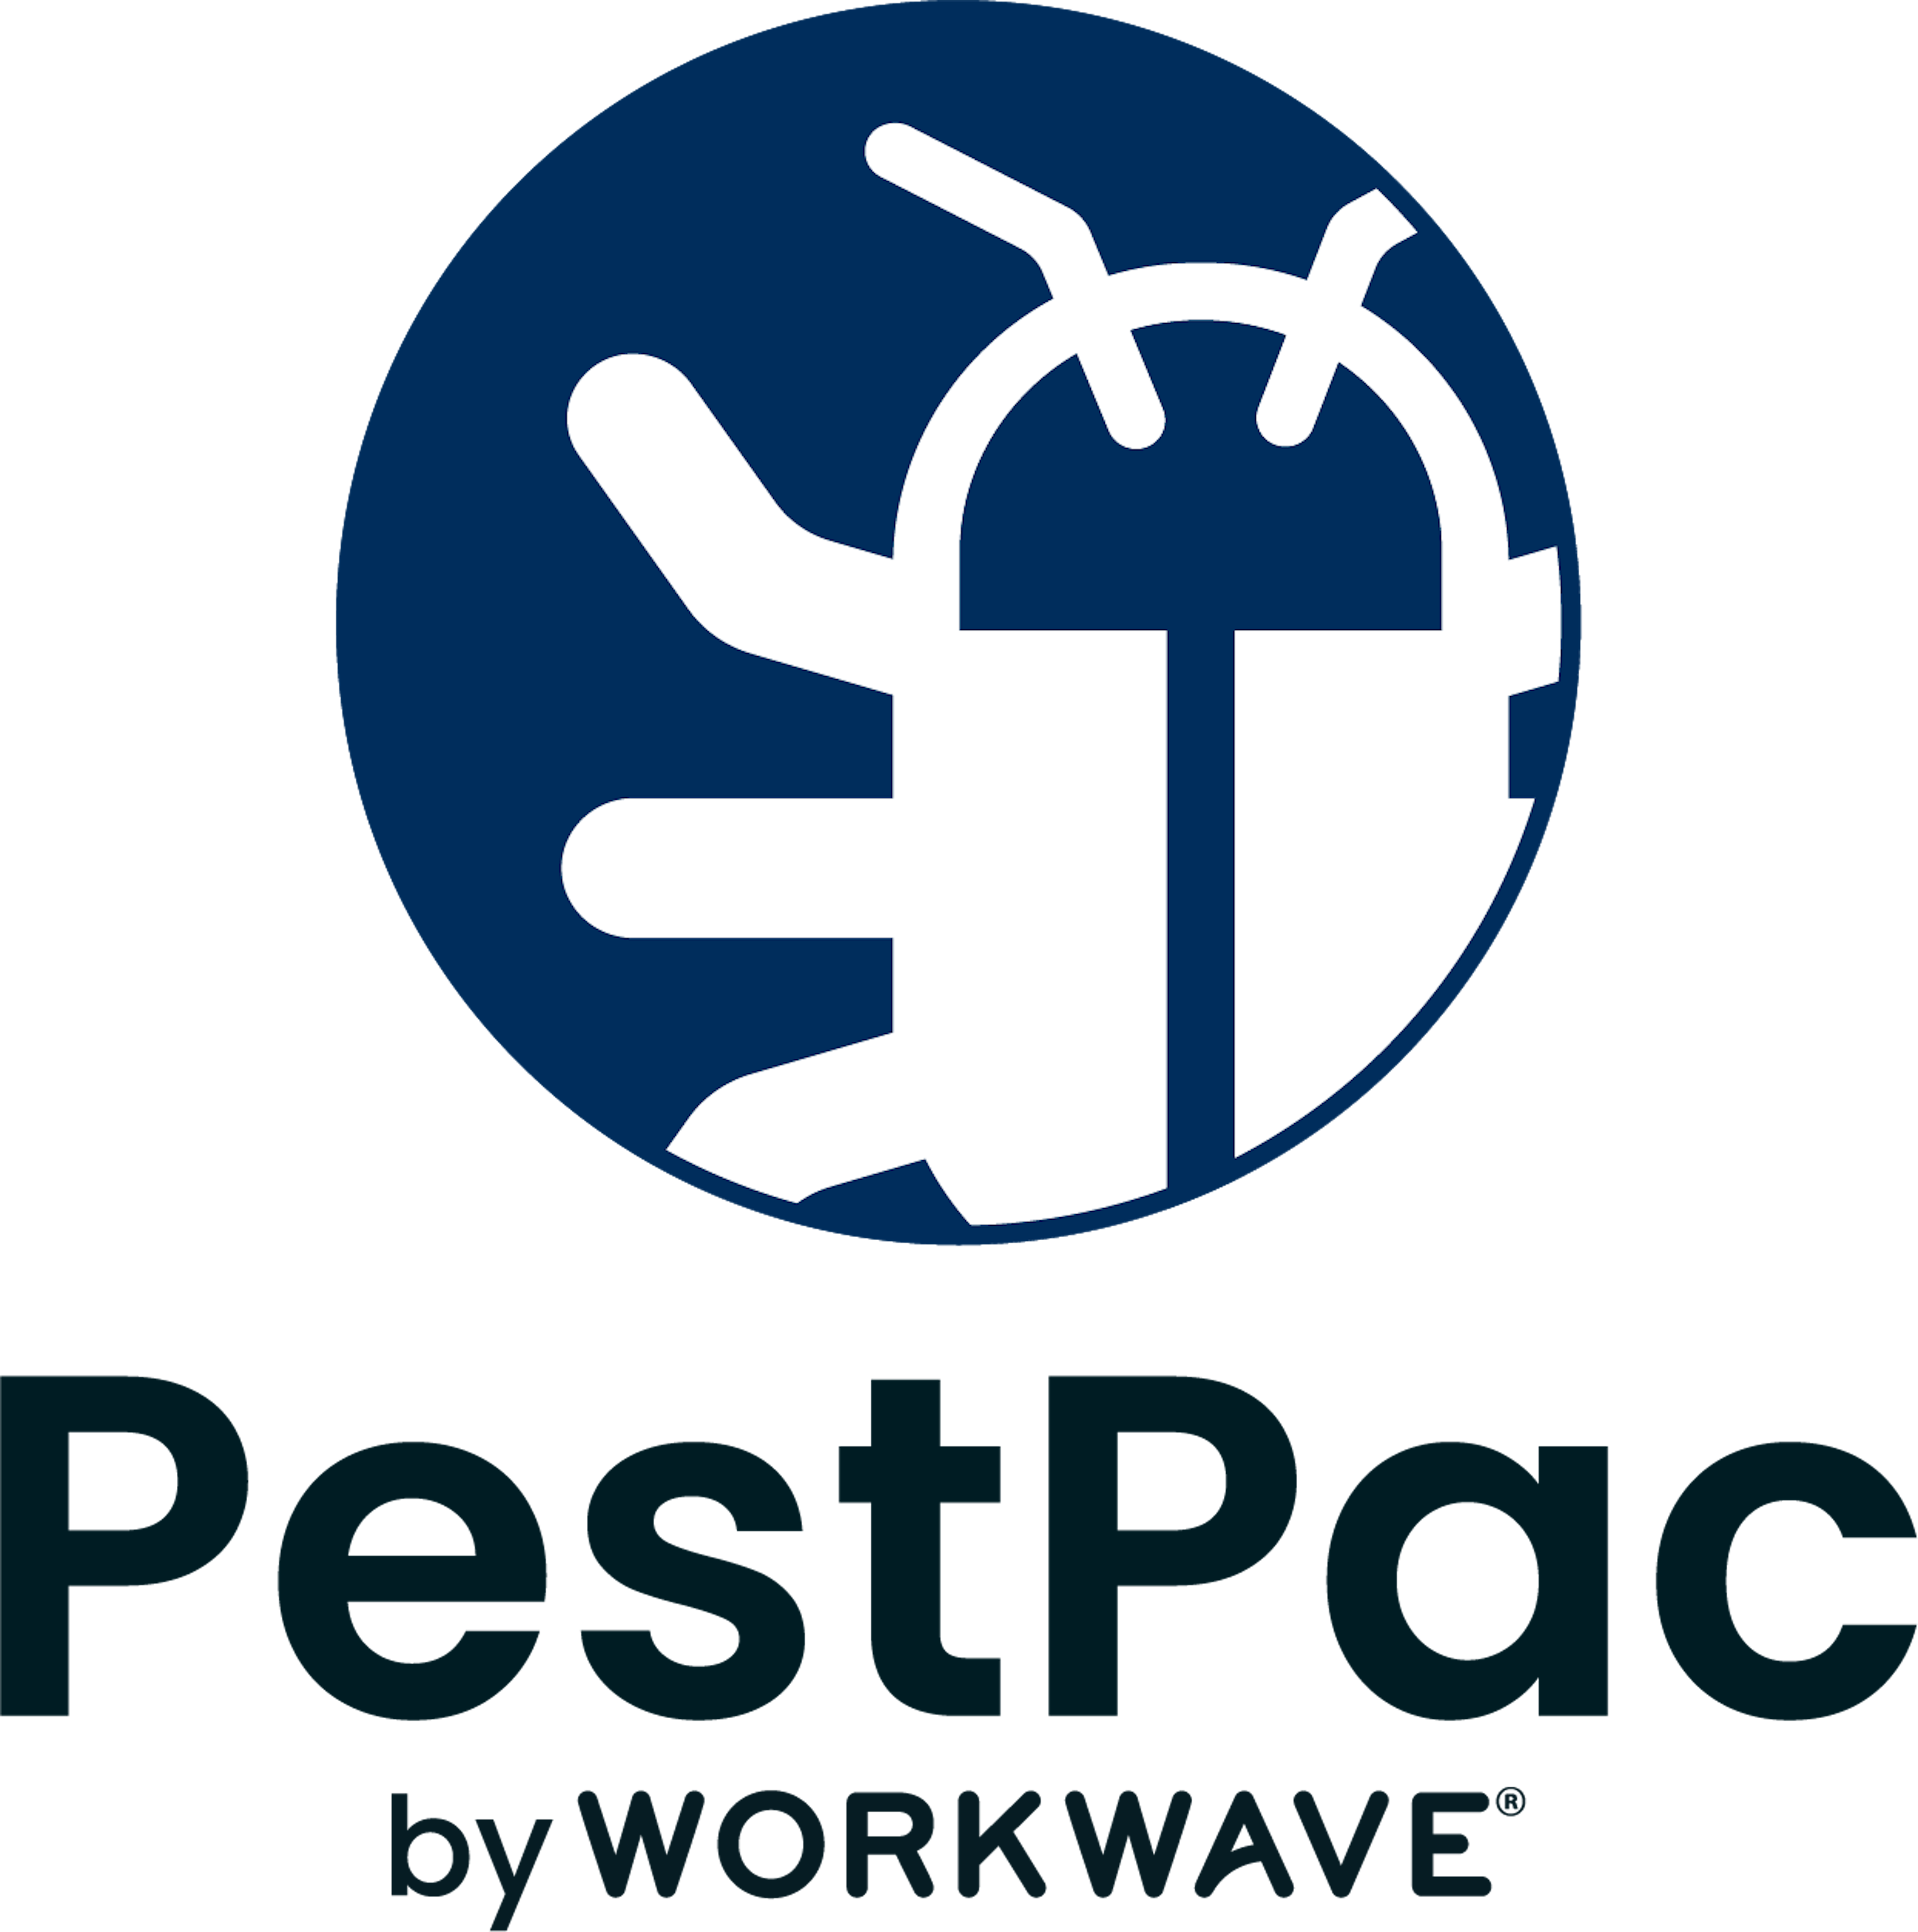 PestPac Logo